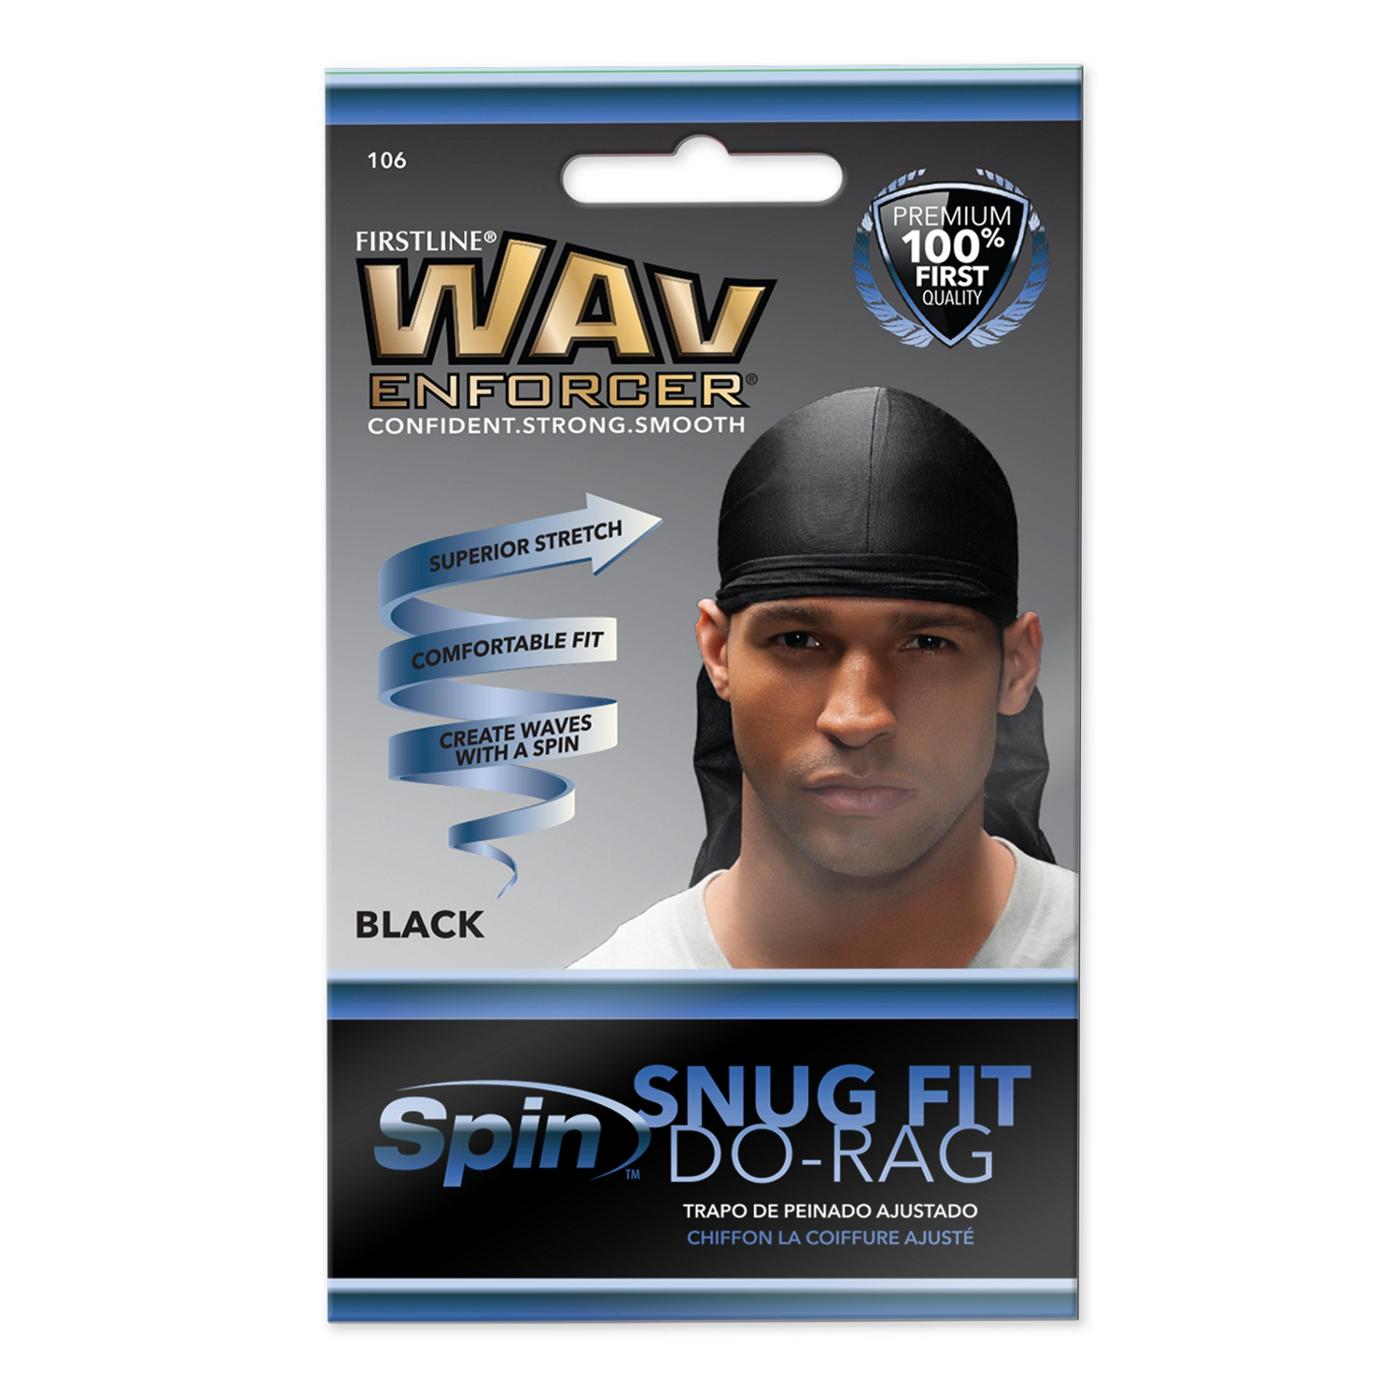 WavEnforcer Snug Fit Do-Rag - Black; image 1 of 3